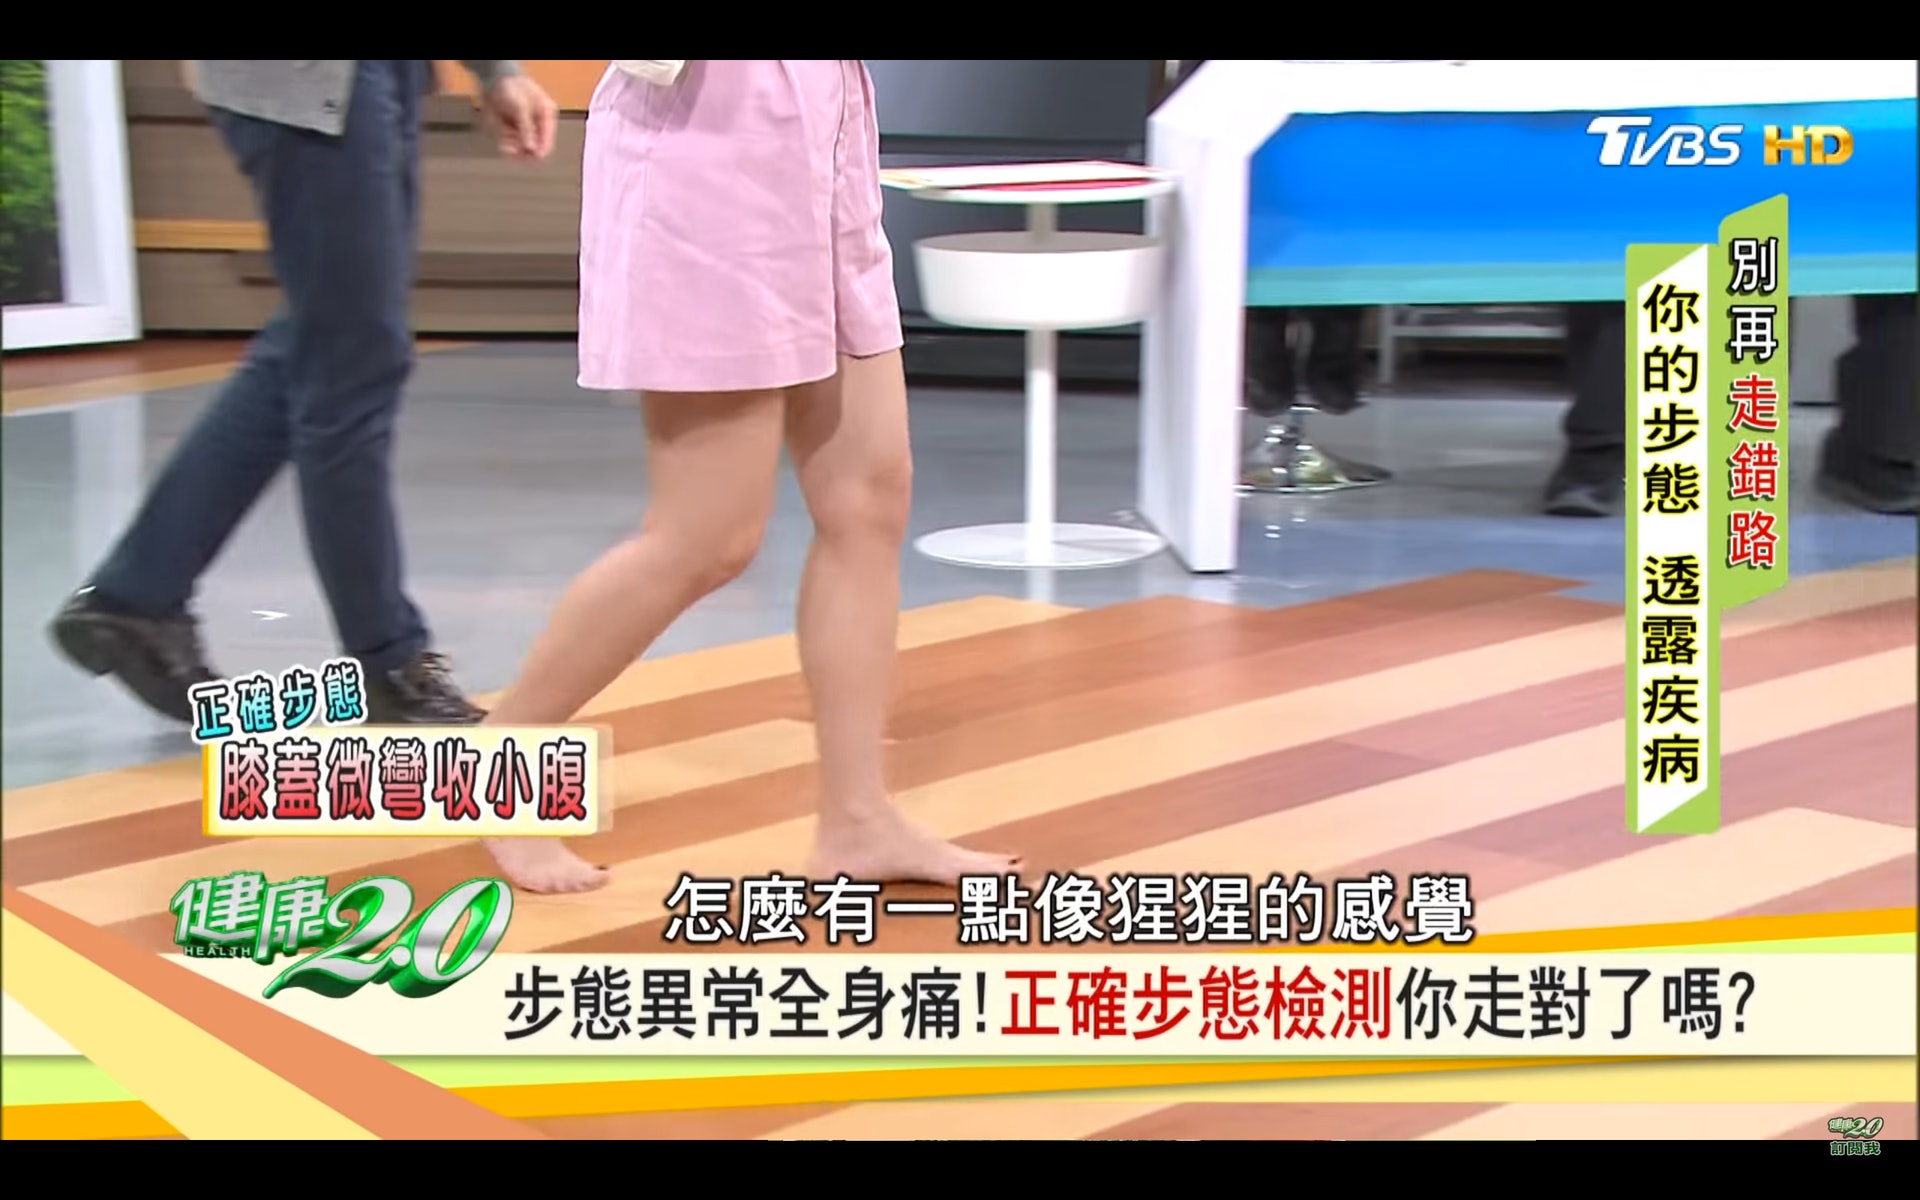 腿部微微降低1至2厘米（台灣TVBS頻道《健康2.0》截圖）